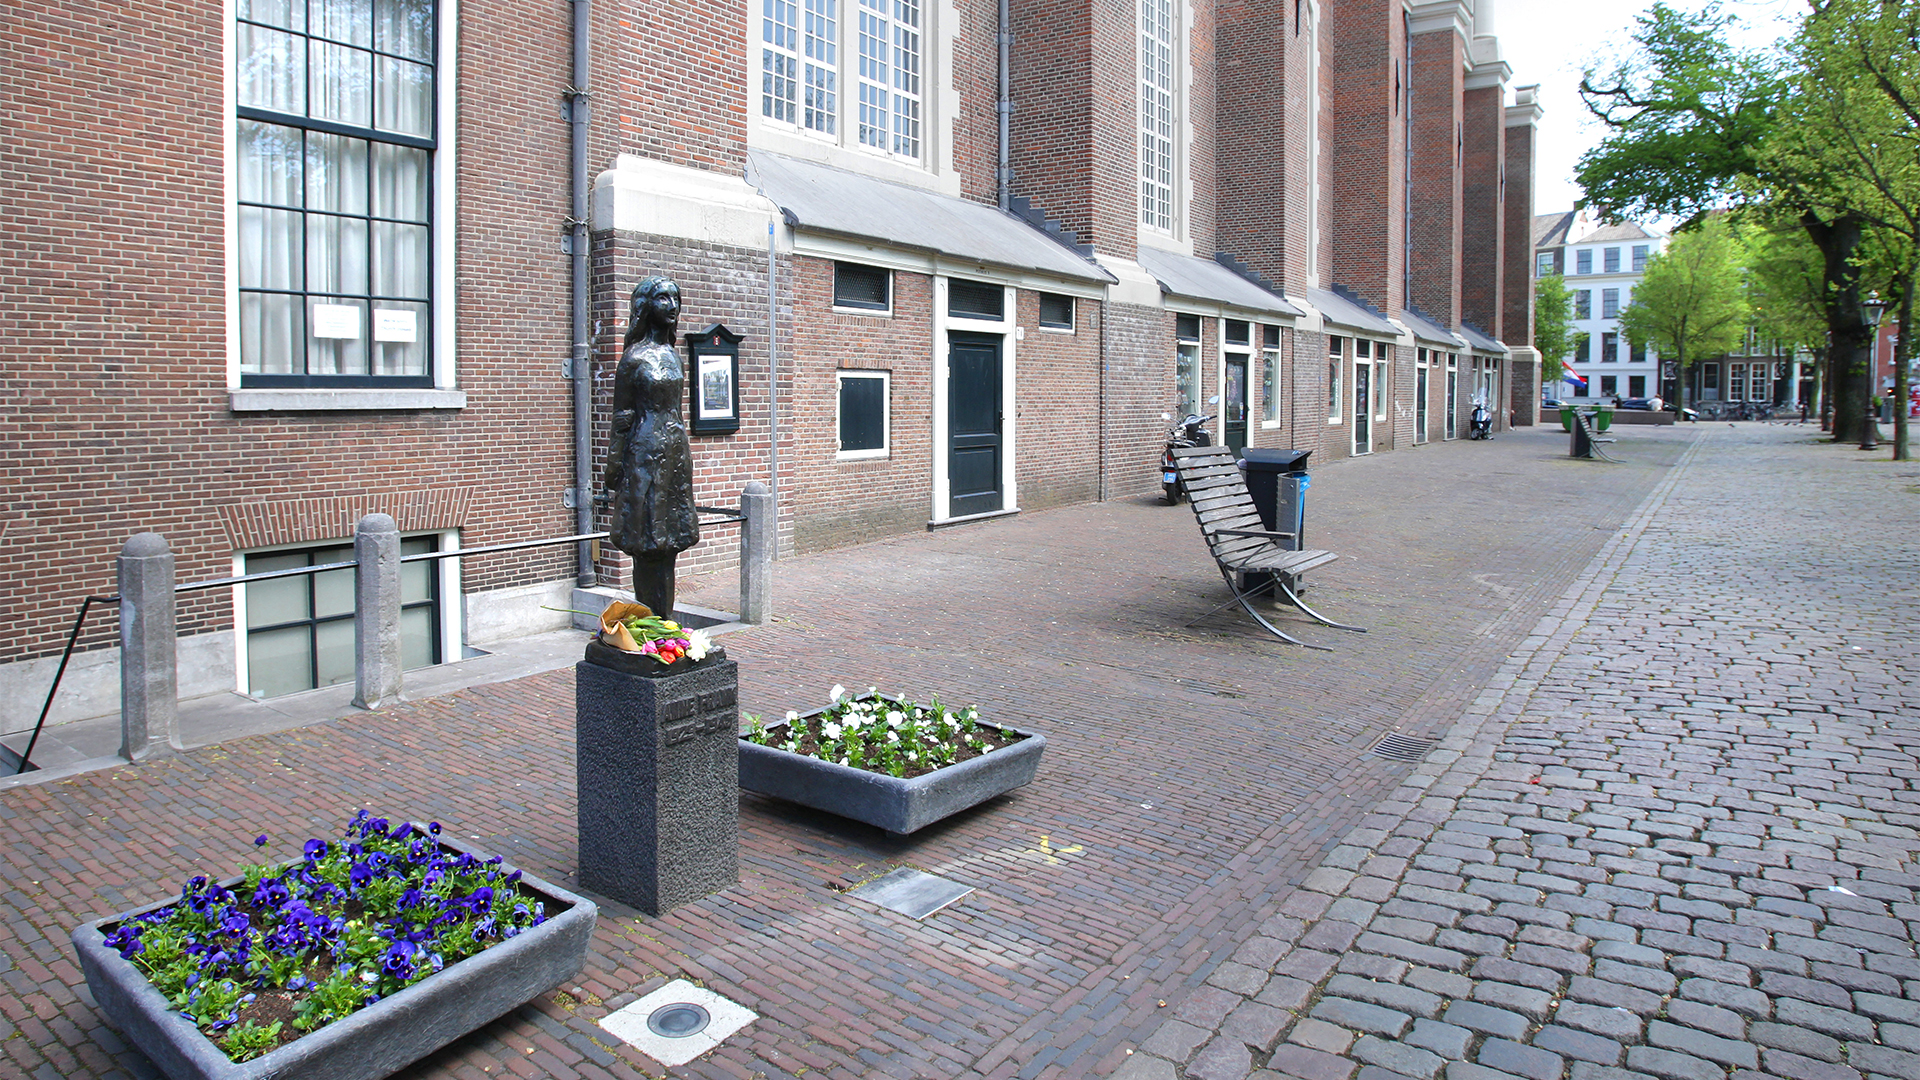 Blumen niedergelegt an der Anne-Frank-Statue in der Nähe des Anne-Frank-Hauses in Amsterdam (Niederlande).